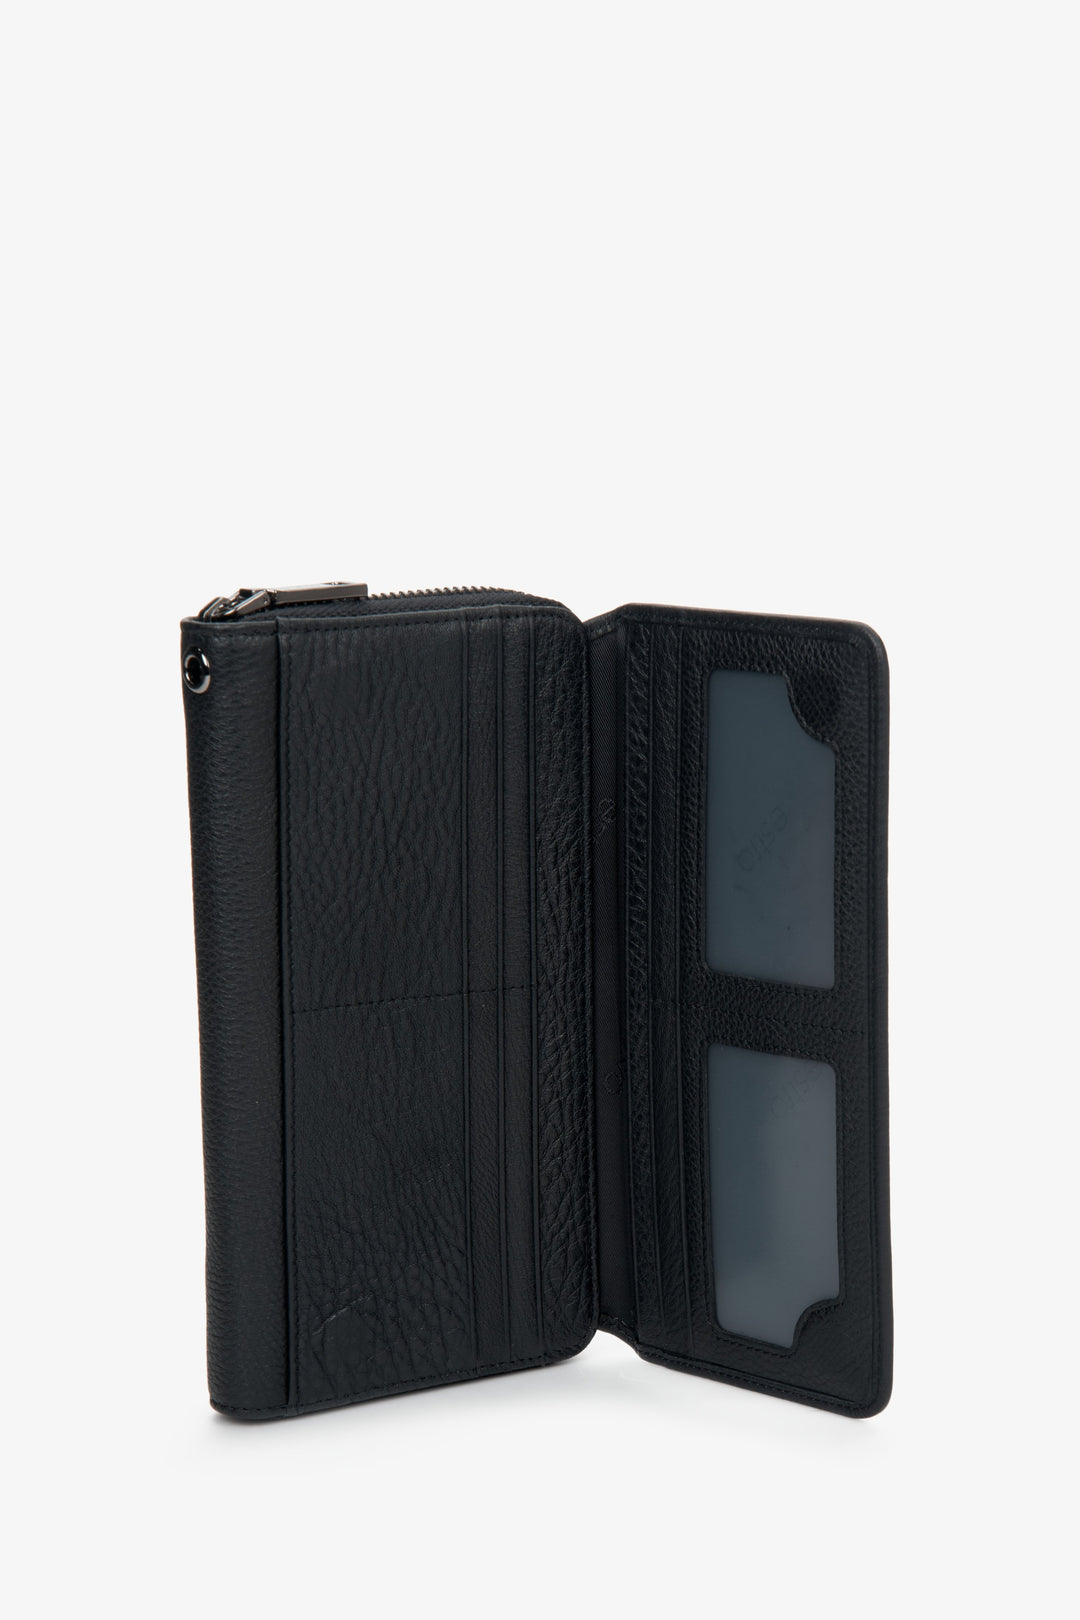 Skórzany czarny portfel męski Estro - zbliżenie na wnętrze modelu.